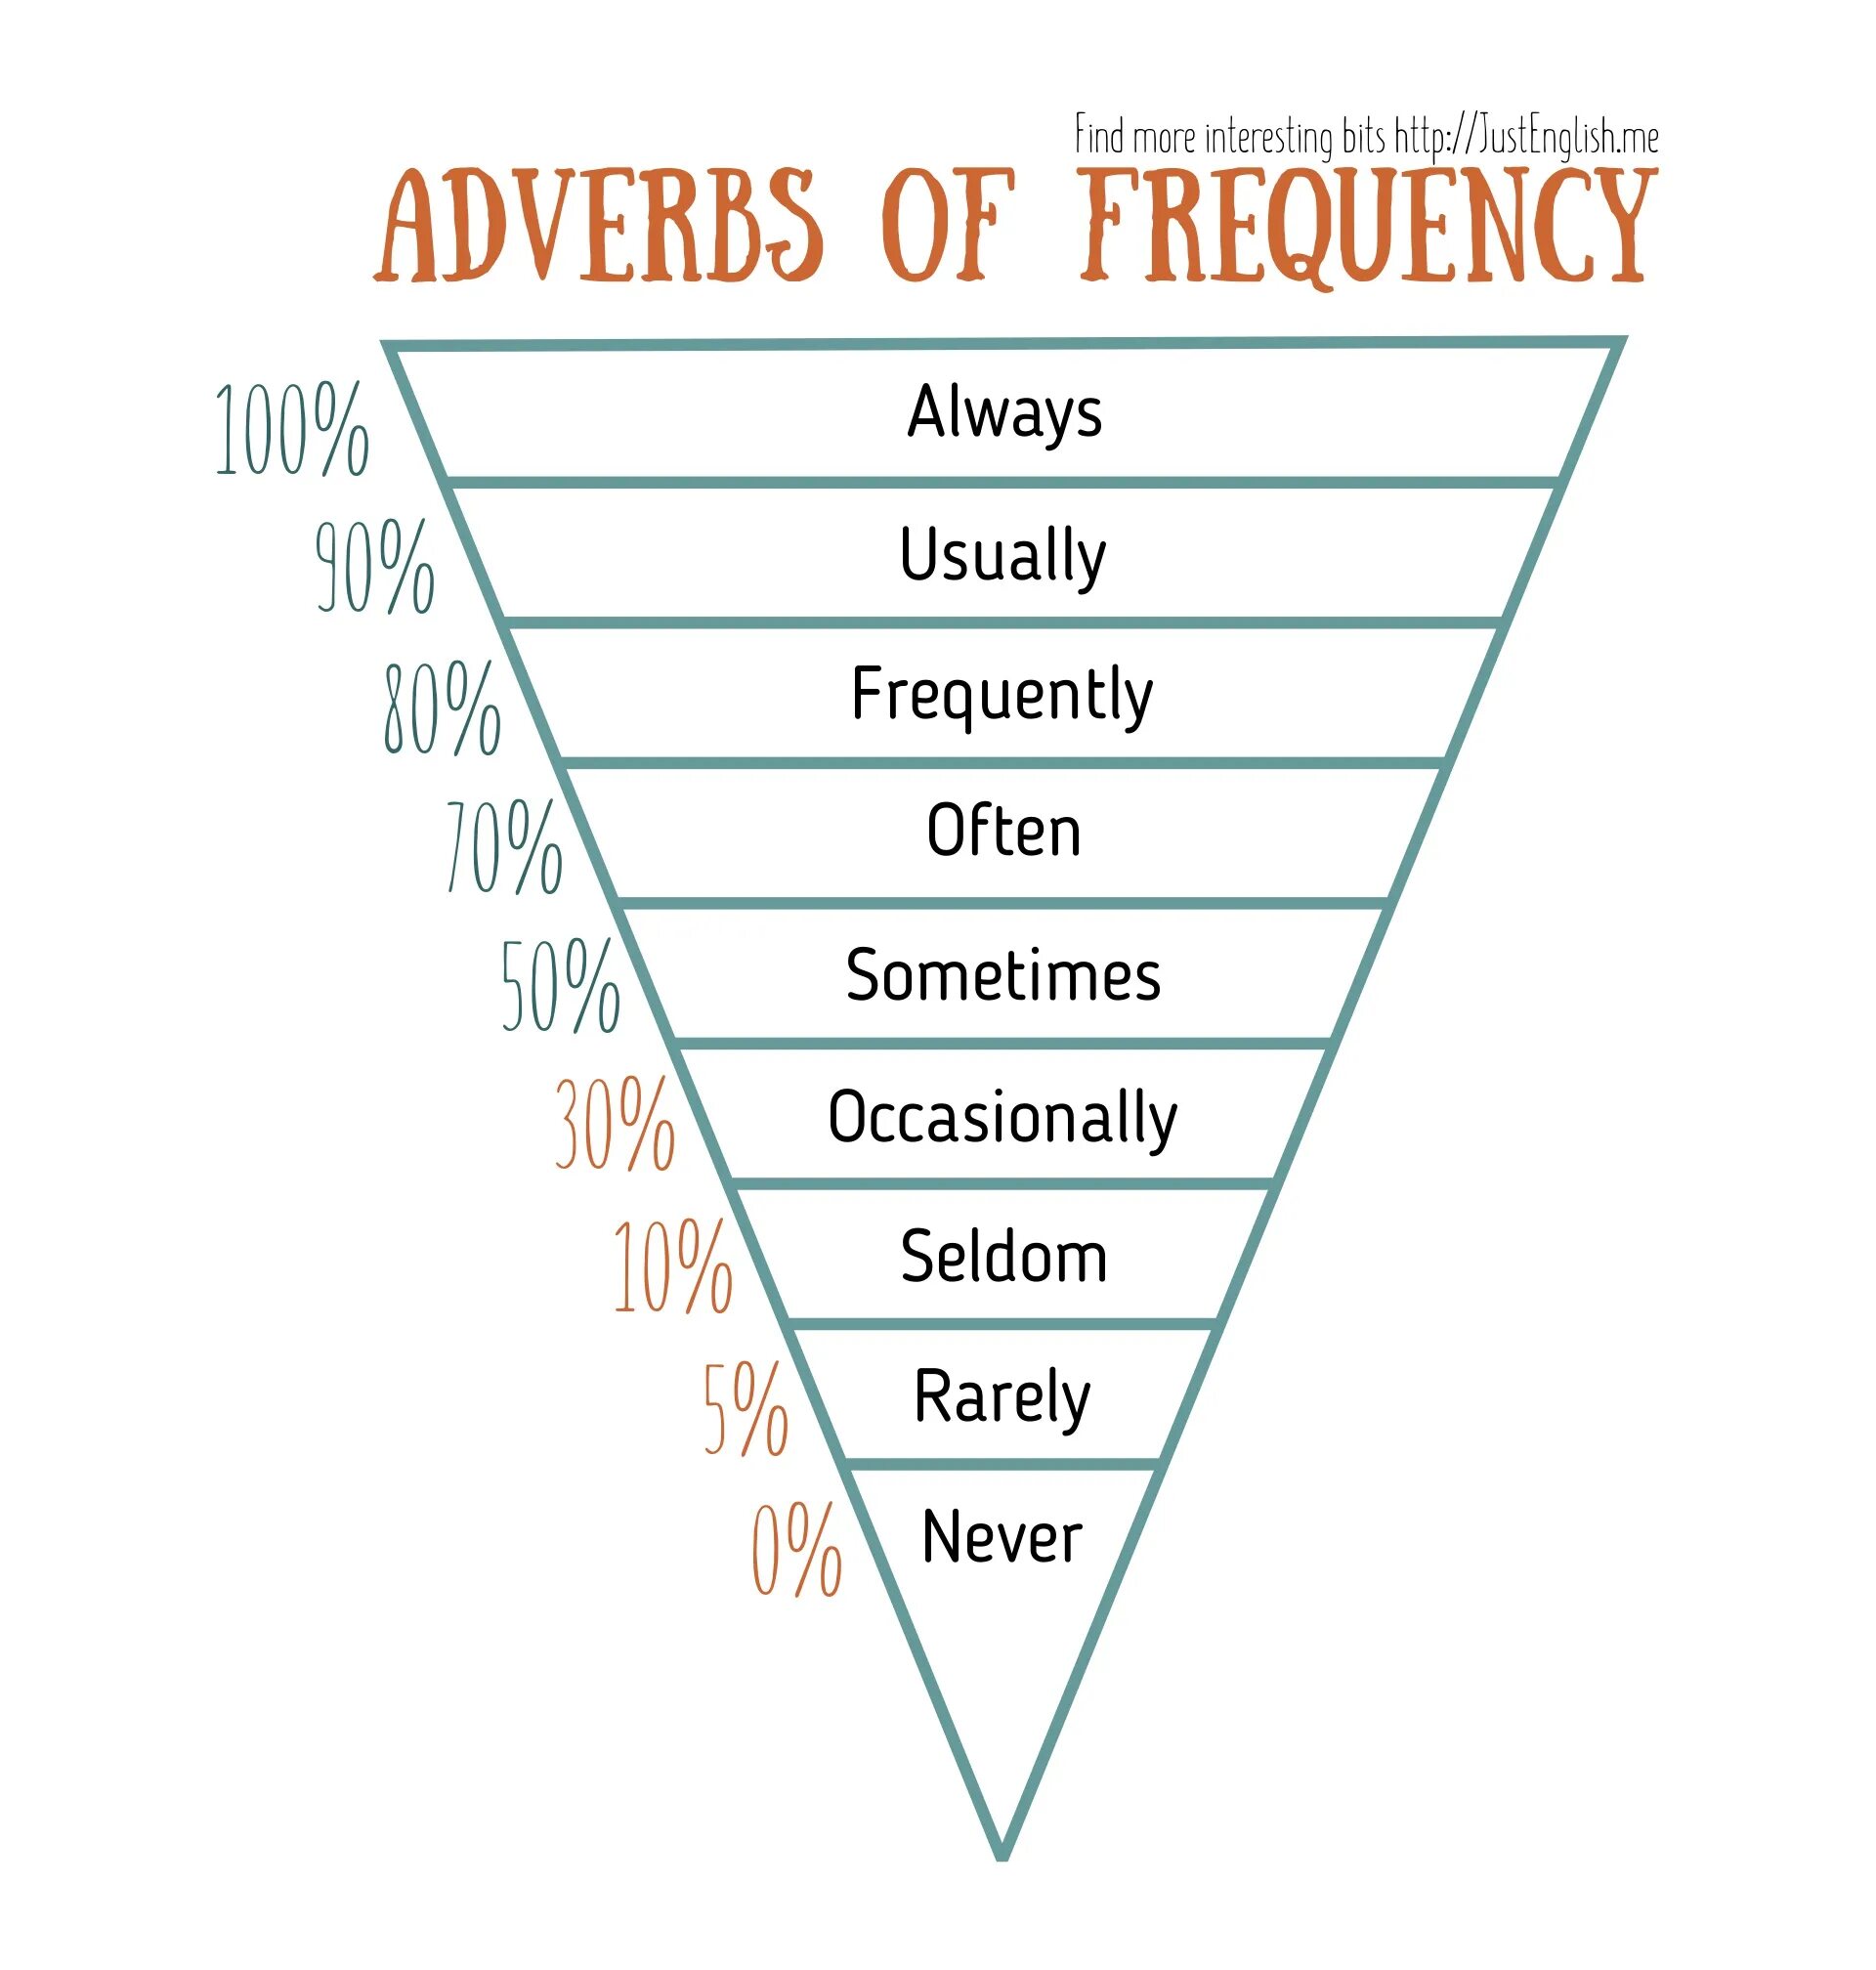 Adverbs of Frequency. Adverbs of Frequency схема. Наречия частотности в английском. Adverbs of Frequency наречия частотности.